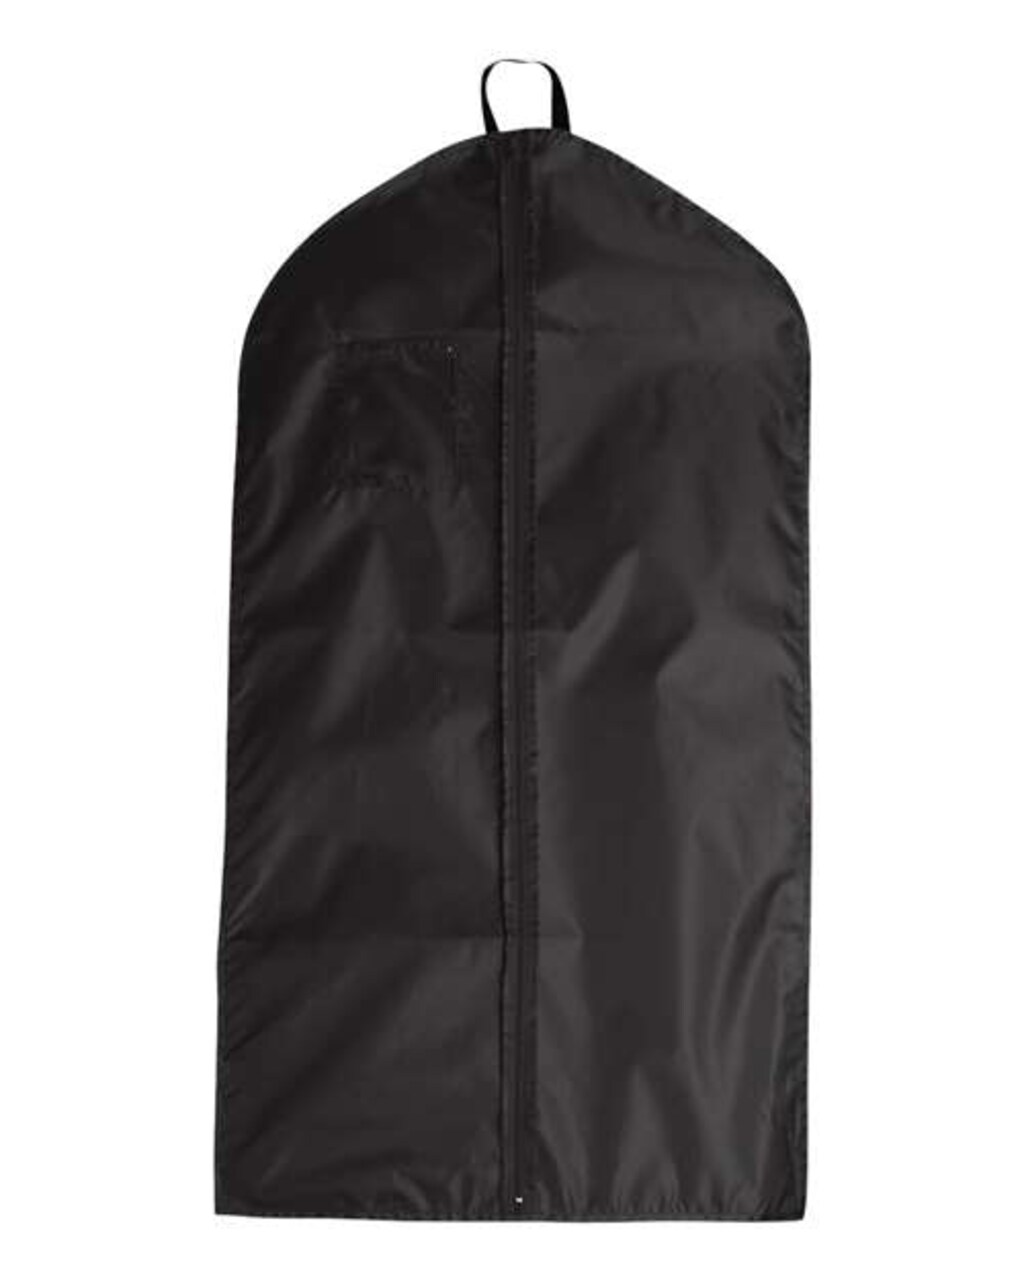 Garment Bag for Wrinkle-Free Travel Wardrobe, Large 4.5W x 5.5H ID card  clear plastic holder, 210D nylon Bag, Wrinkle-Free Travel and Impeccable  Organization for the Modern Jetsetter Garment Bag